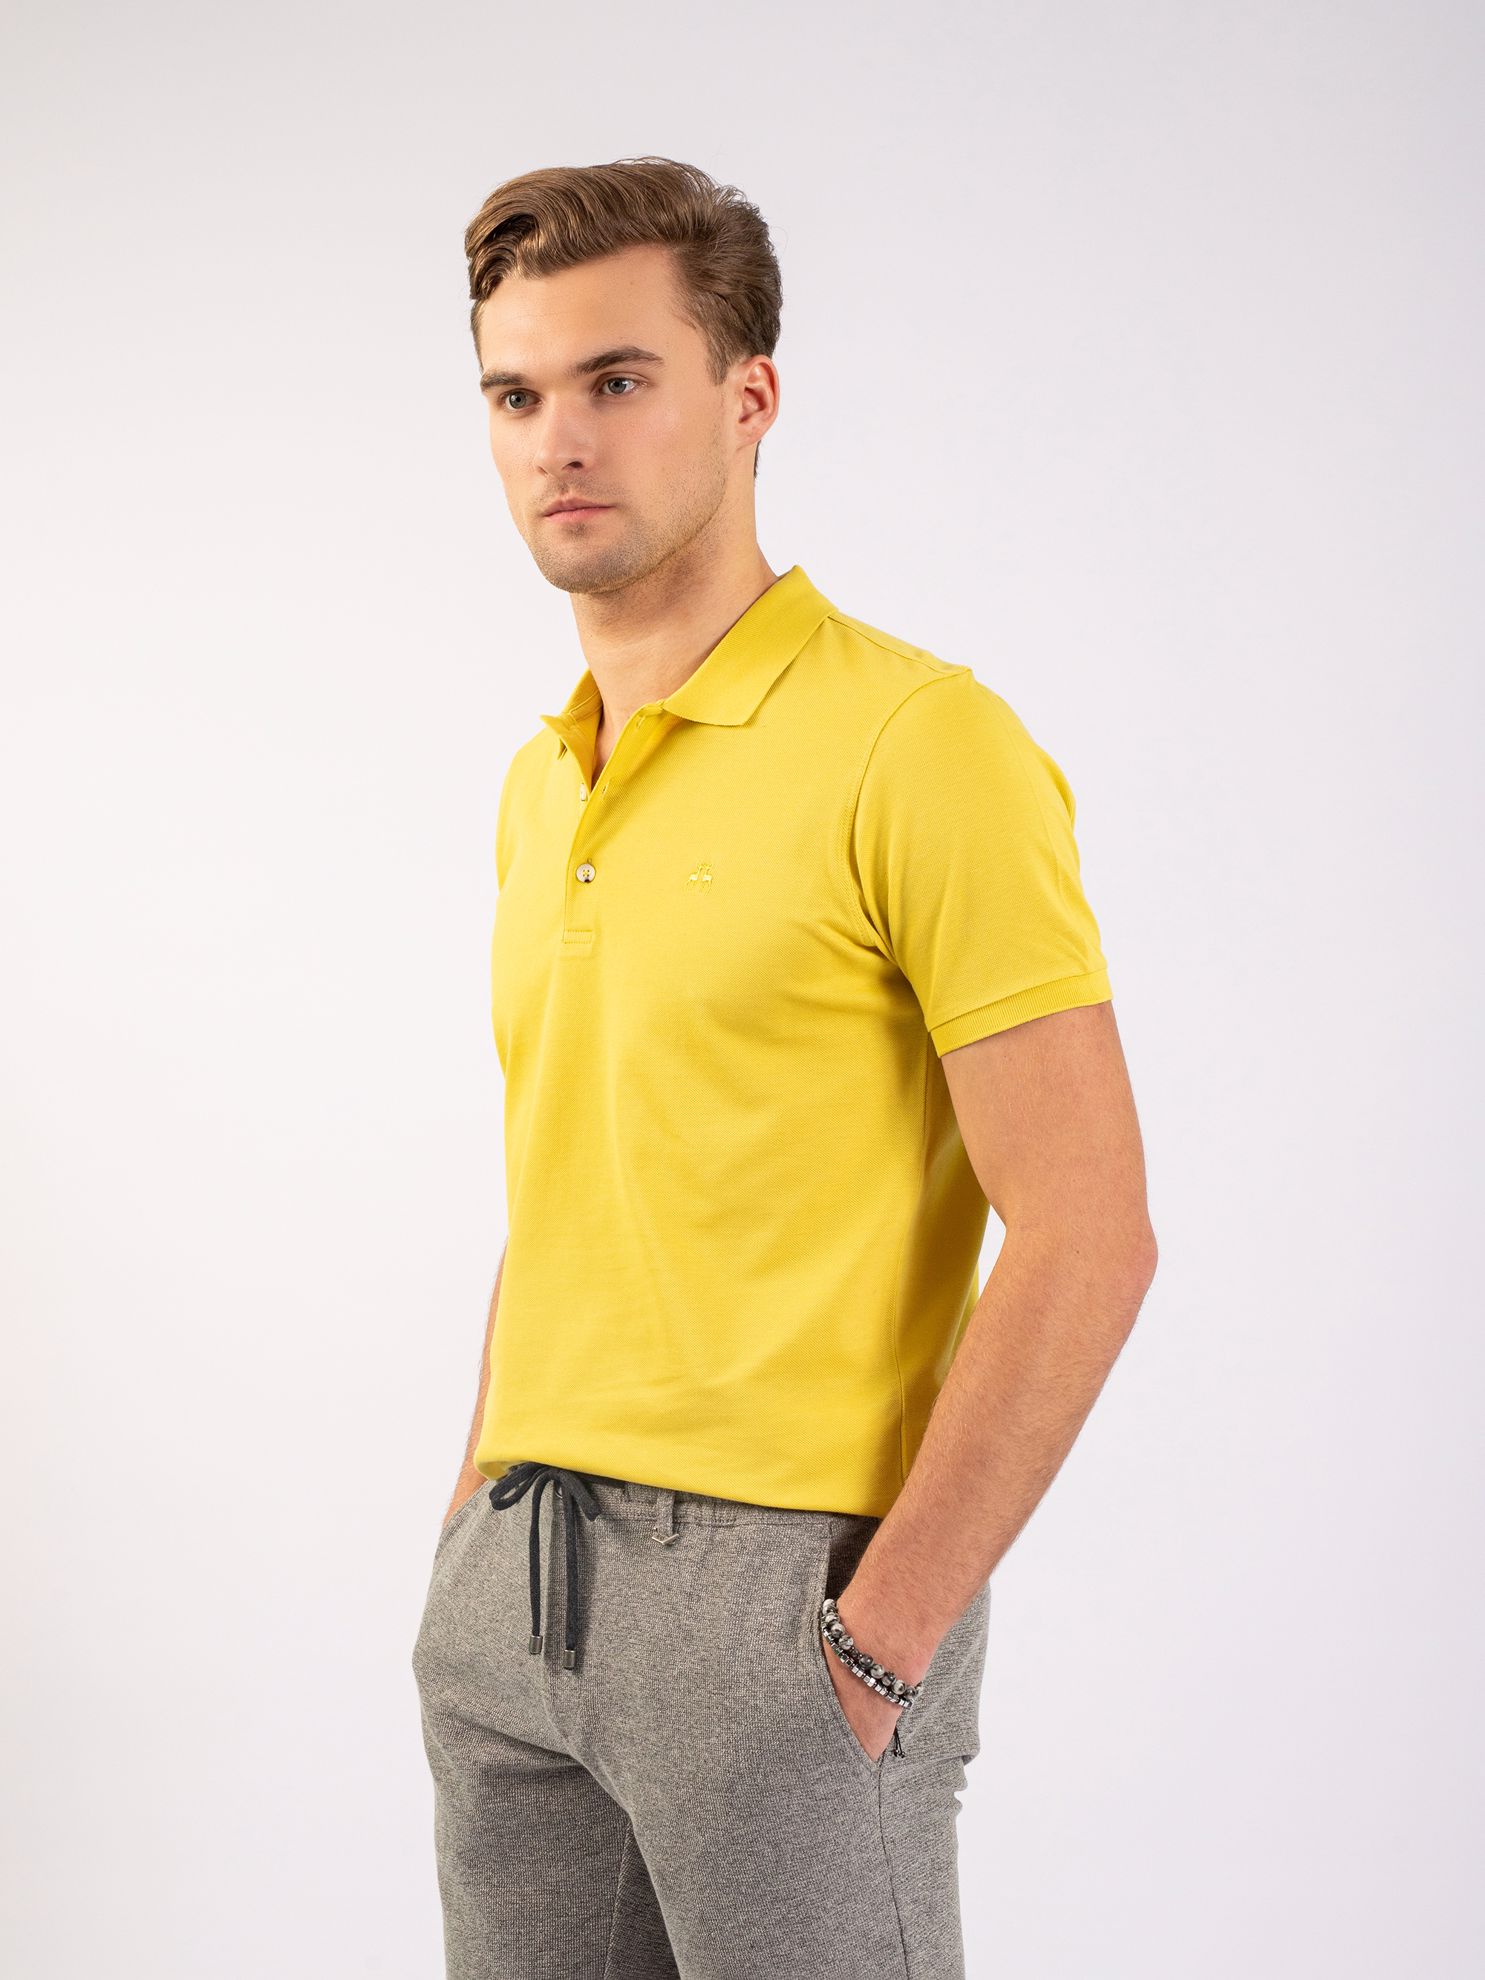 Karaca Erkek Slim Fit Polo Yaka Tişört-Haki. ürün görseli